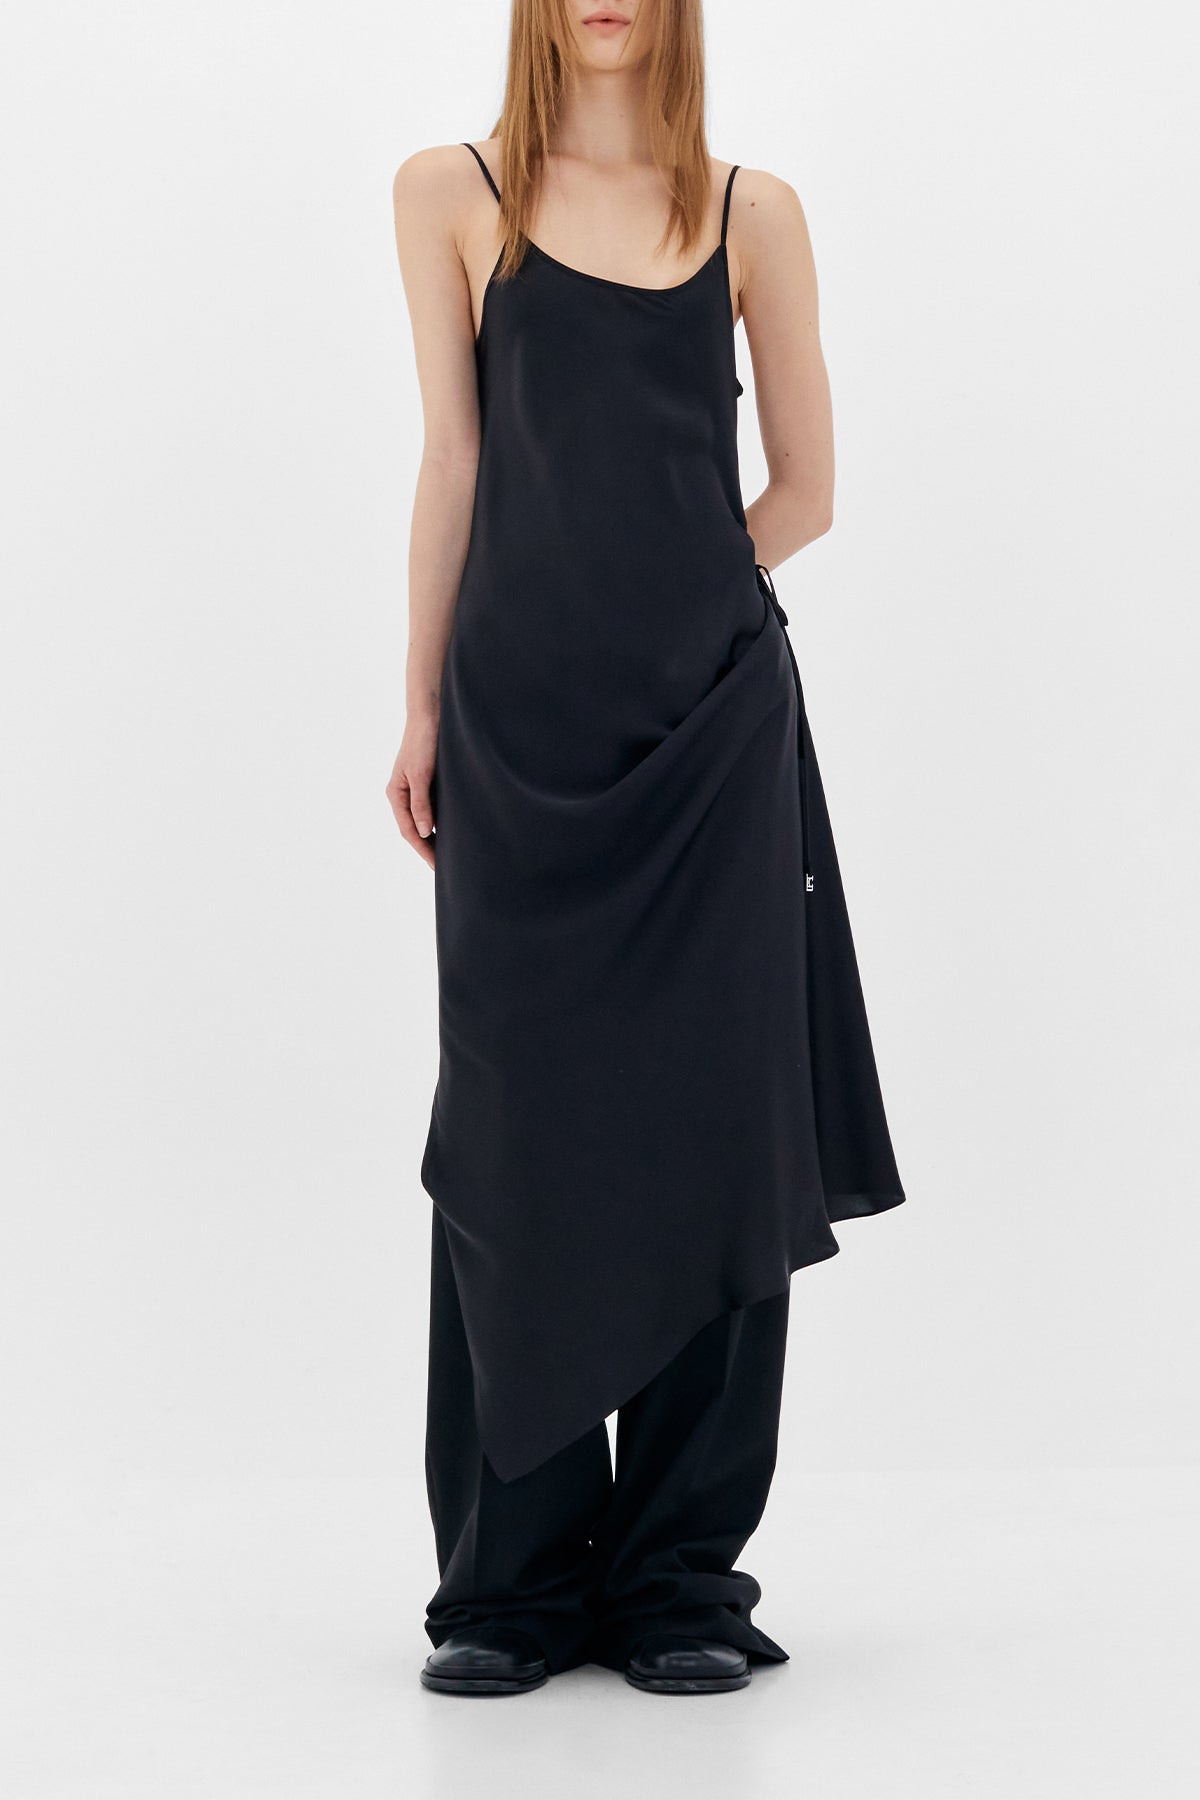 Two-Way Slip Dress in Black